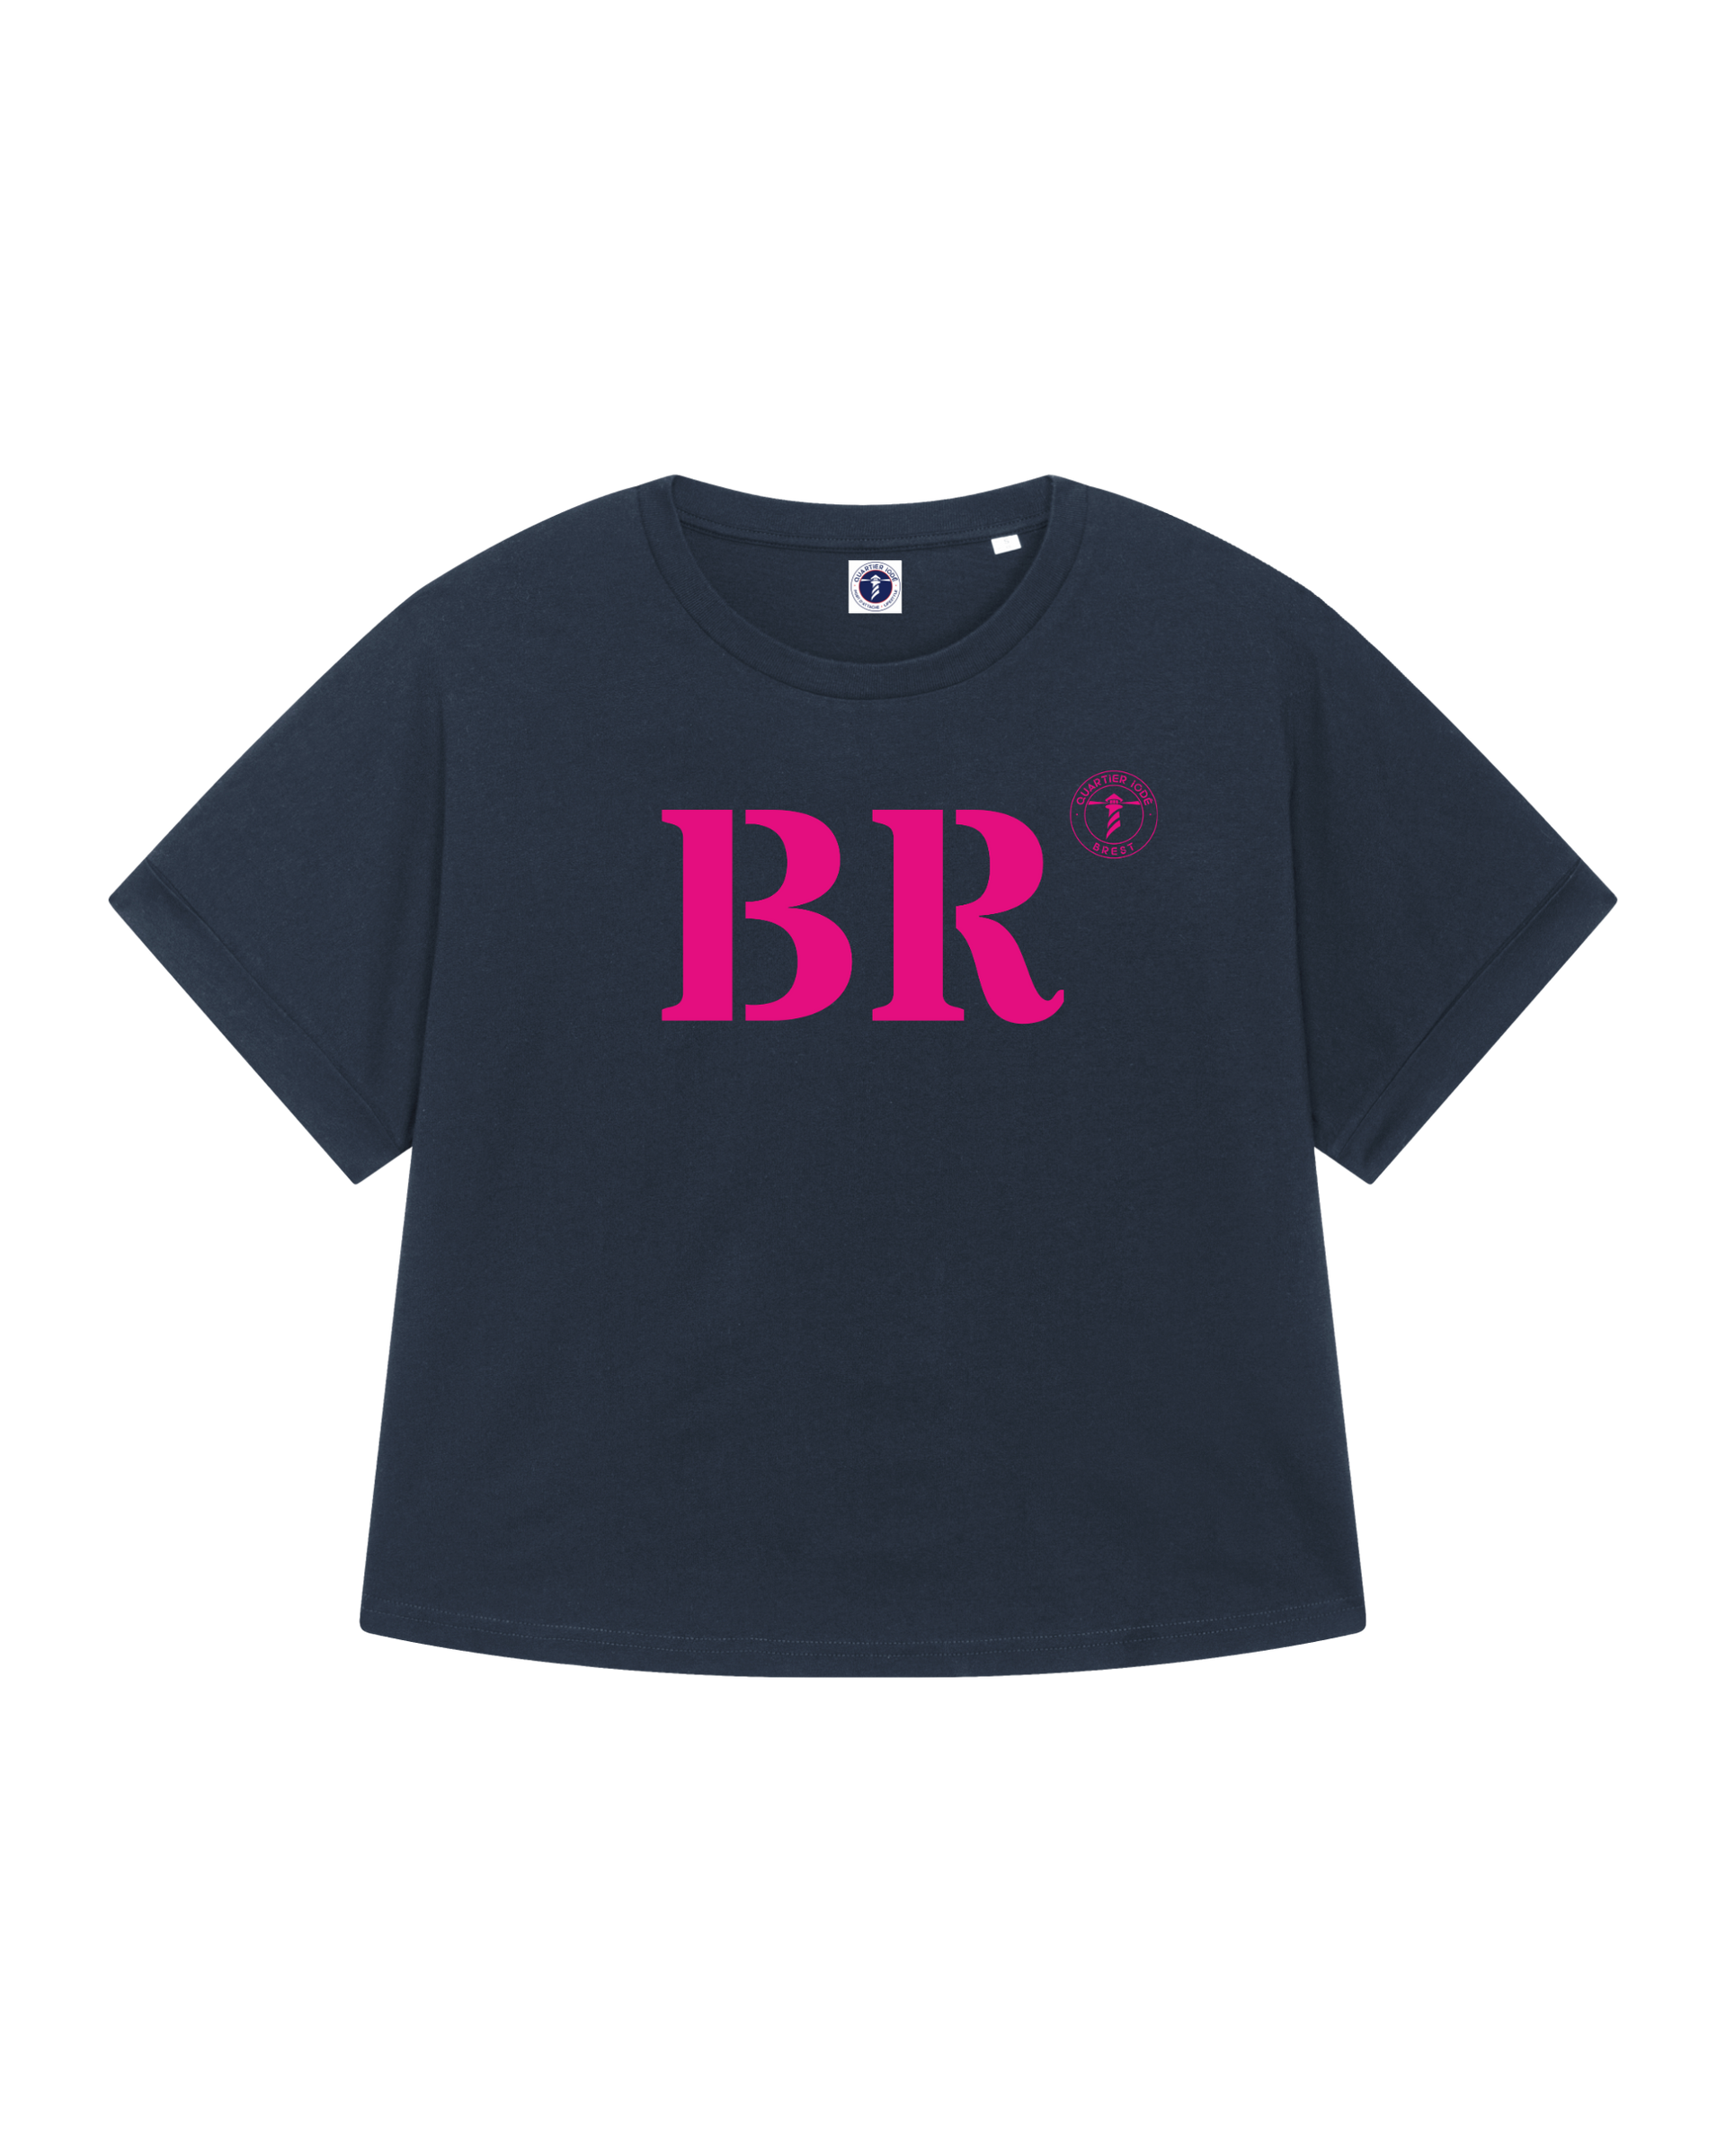 Tshirt Oversize breizh, de la marque bretonne Quartier iodé. Imprimé BR pour Brest. Idéal pour femme, style chic décontracté.